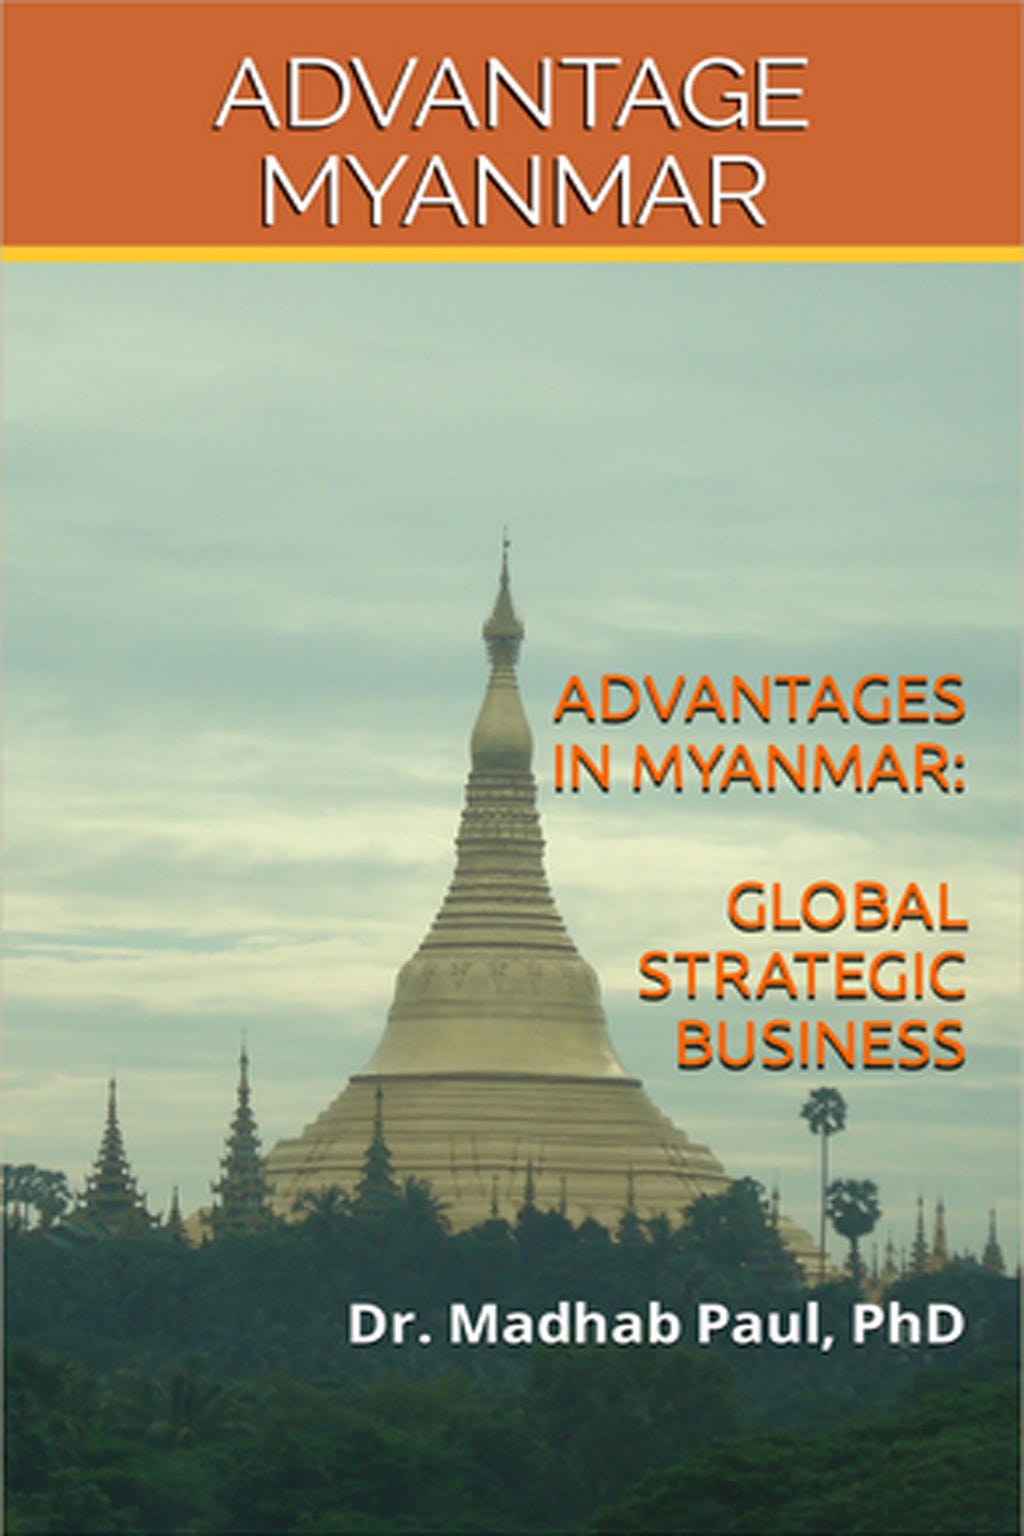 ADVANTAGE MYANMAR